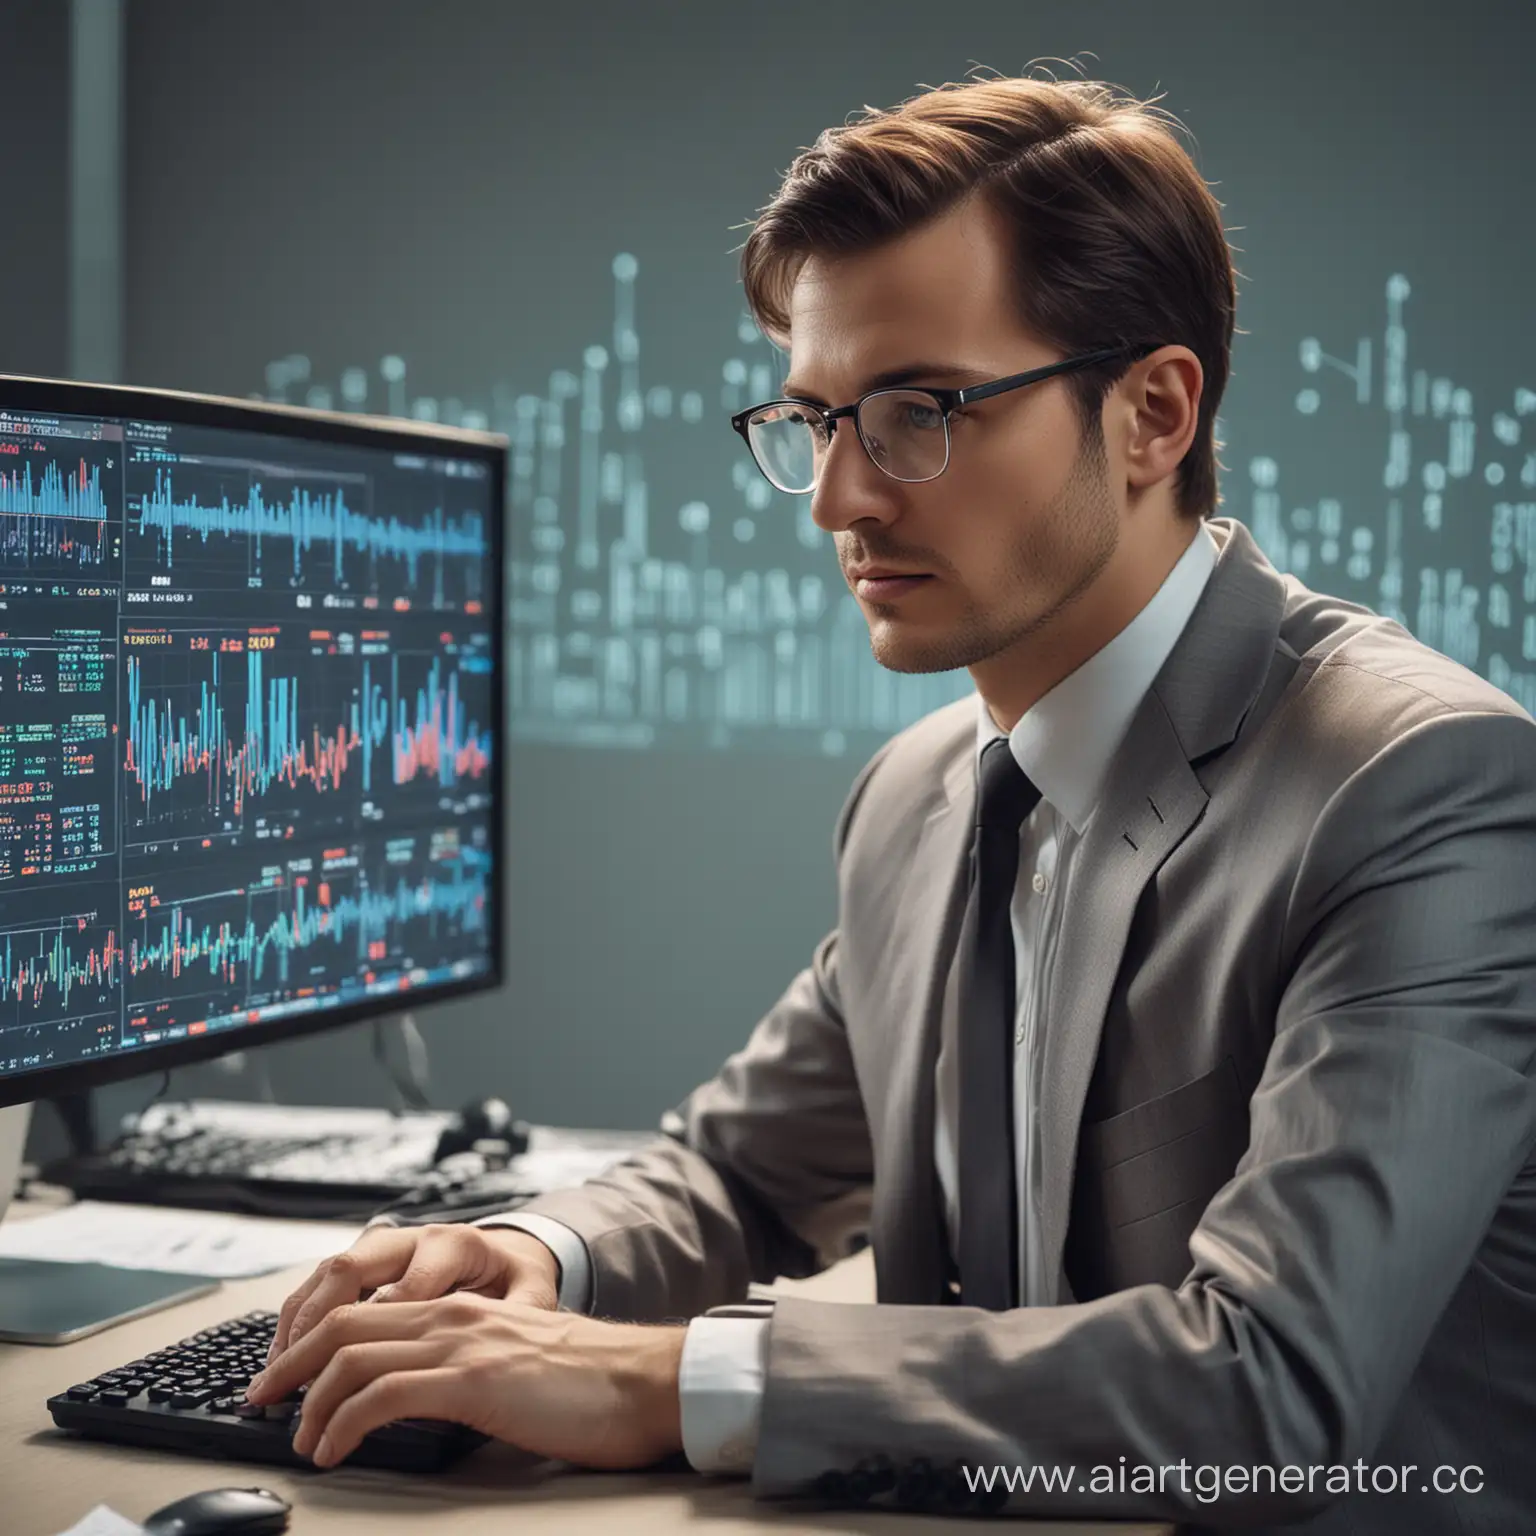 мужчина эксперт по искусственным интеллектам, сидит в очках за компьютером и смотрит на статистику